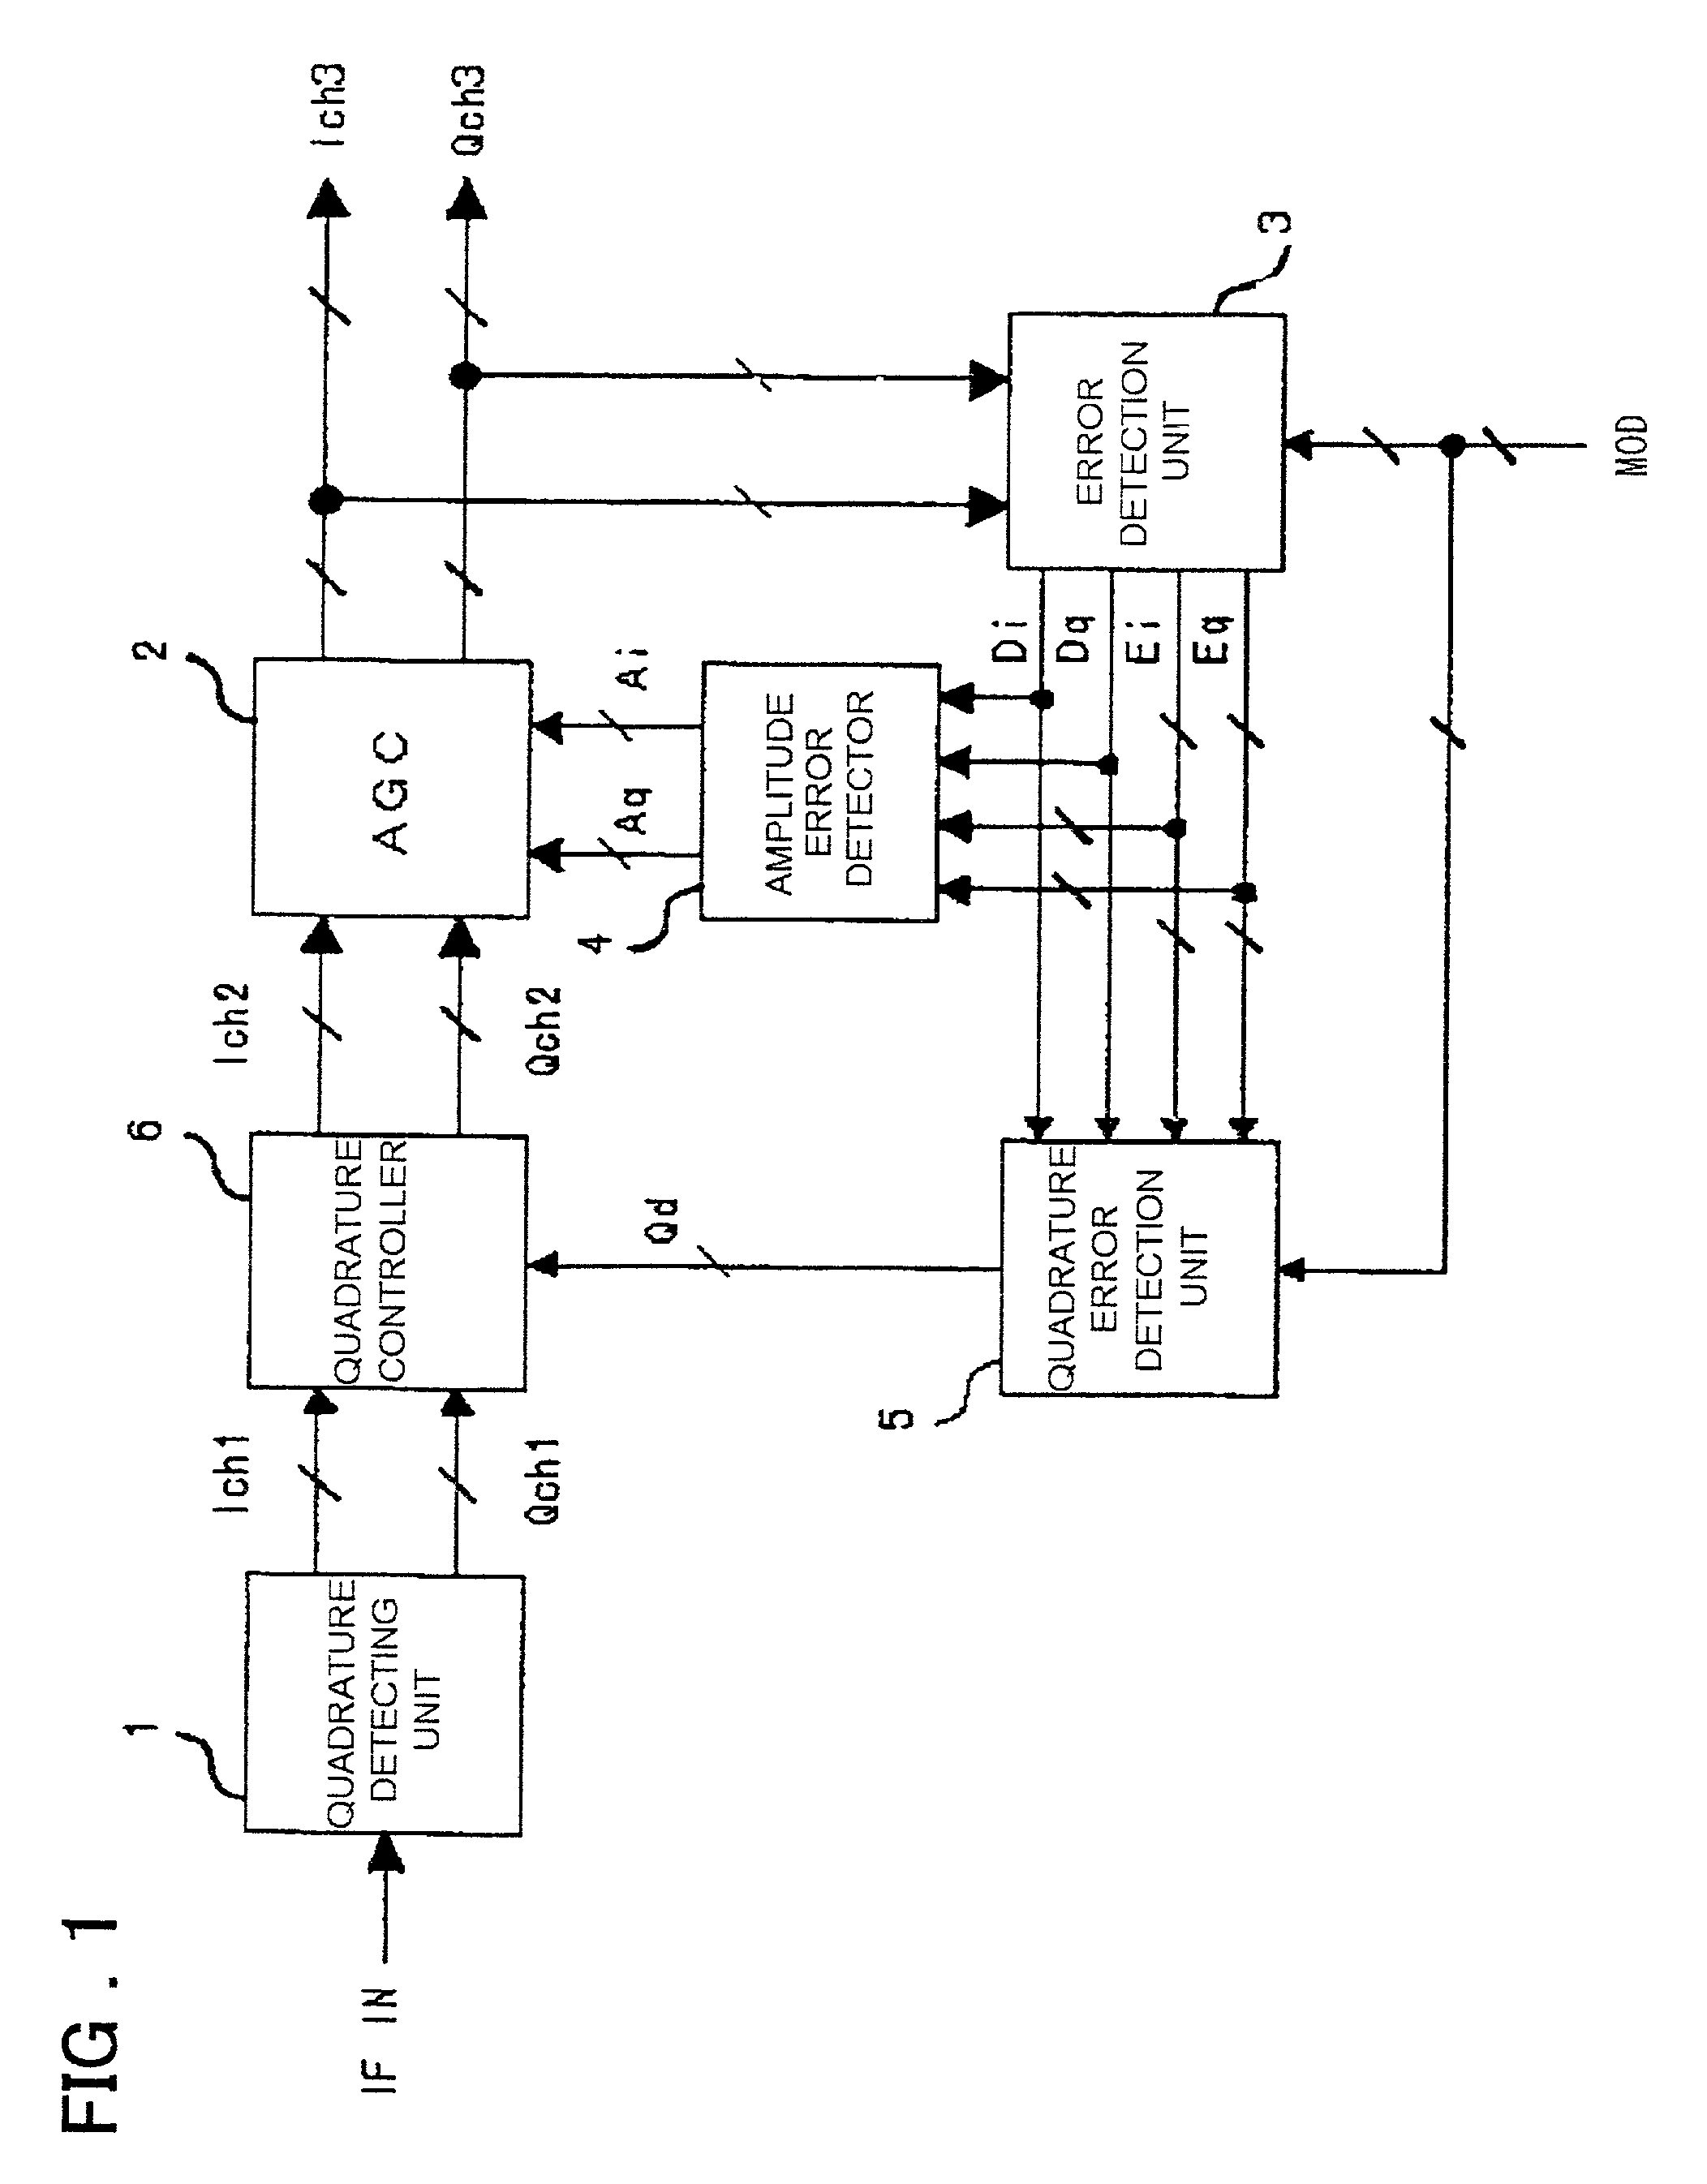 Demodulator having automatic quadrature control function